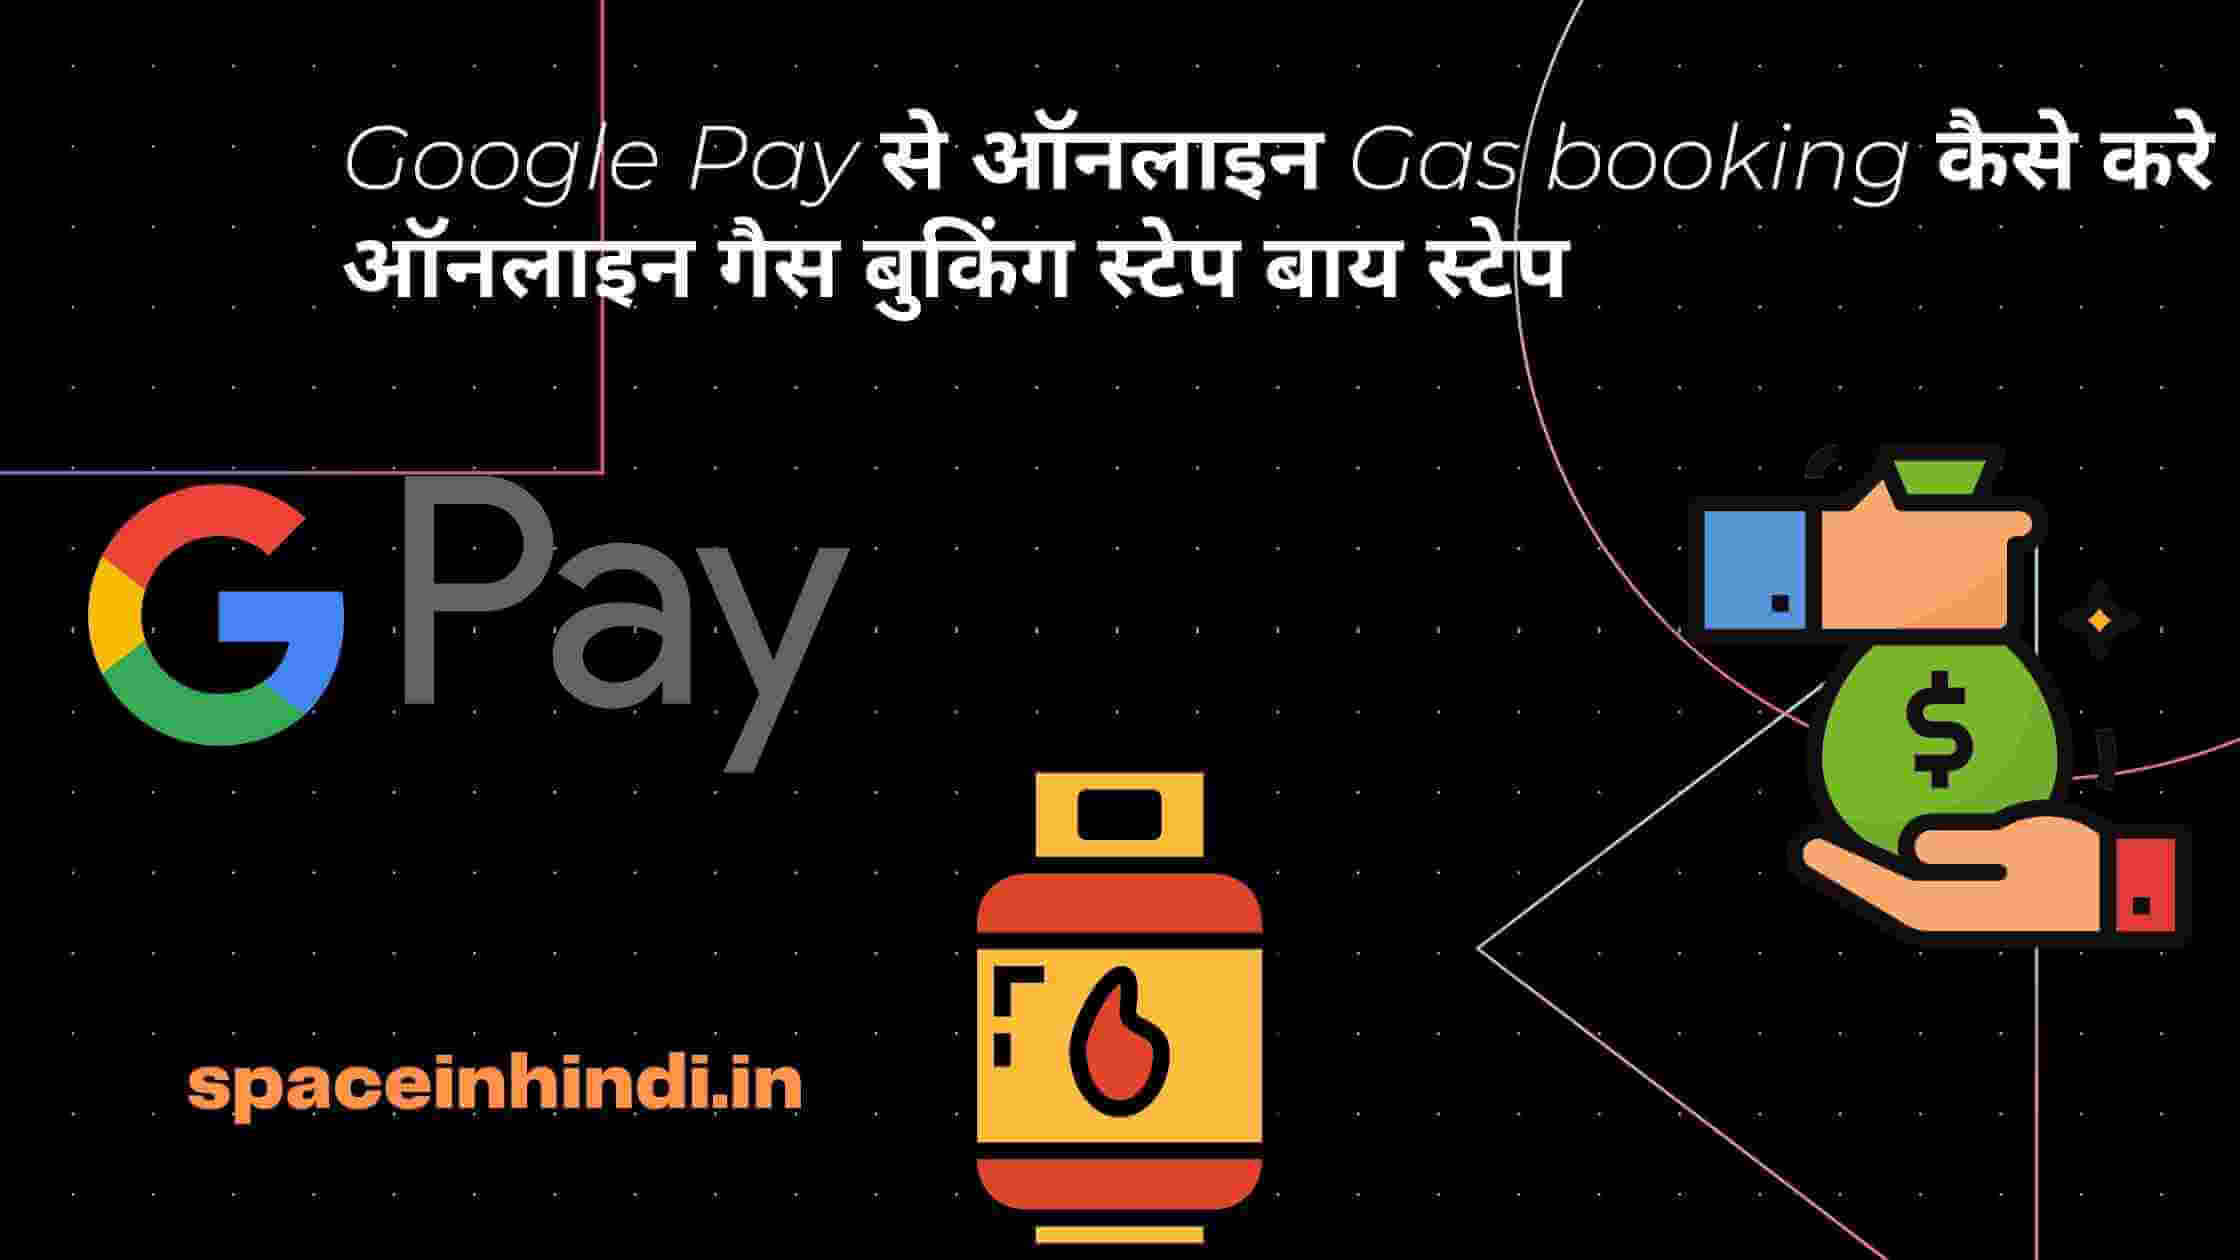 Google-Pay-से-ऑनलाइन-Gas-booking-कैसे-करे-ऑनलाइन-गैस-बुकिंग-स्टेप-बाय-स्टेप-spaceinhindi